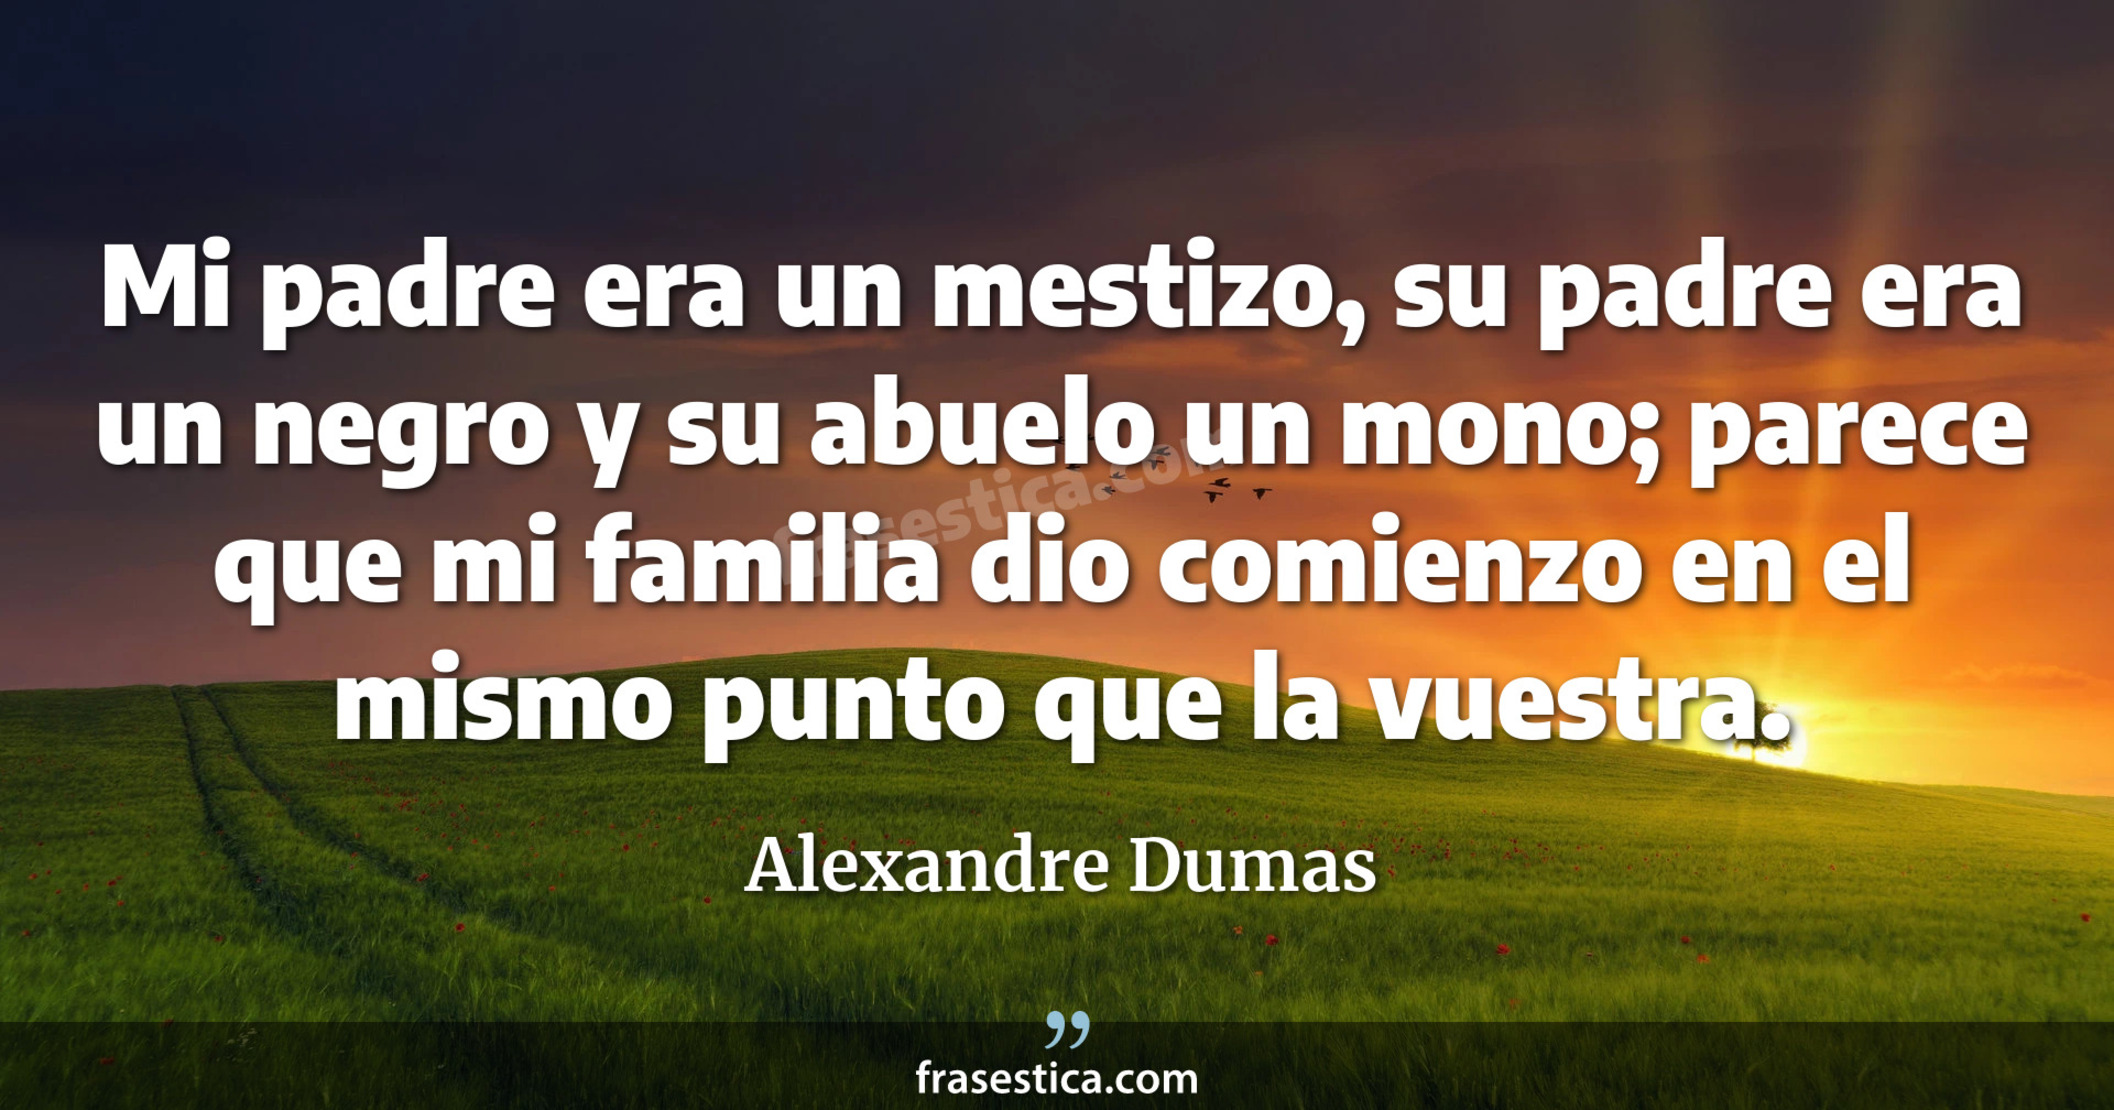 Mi padre era un mestizo, su padre era un negro y su abuelo un mono; parece que mi familia dio comienzo en el mismo punto que la vuestra. - Alexandre Dumas